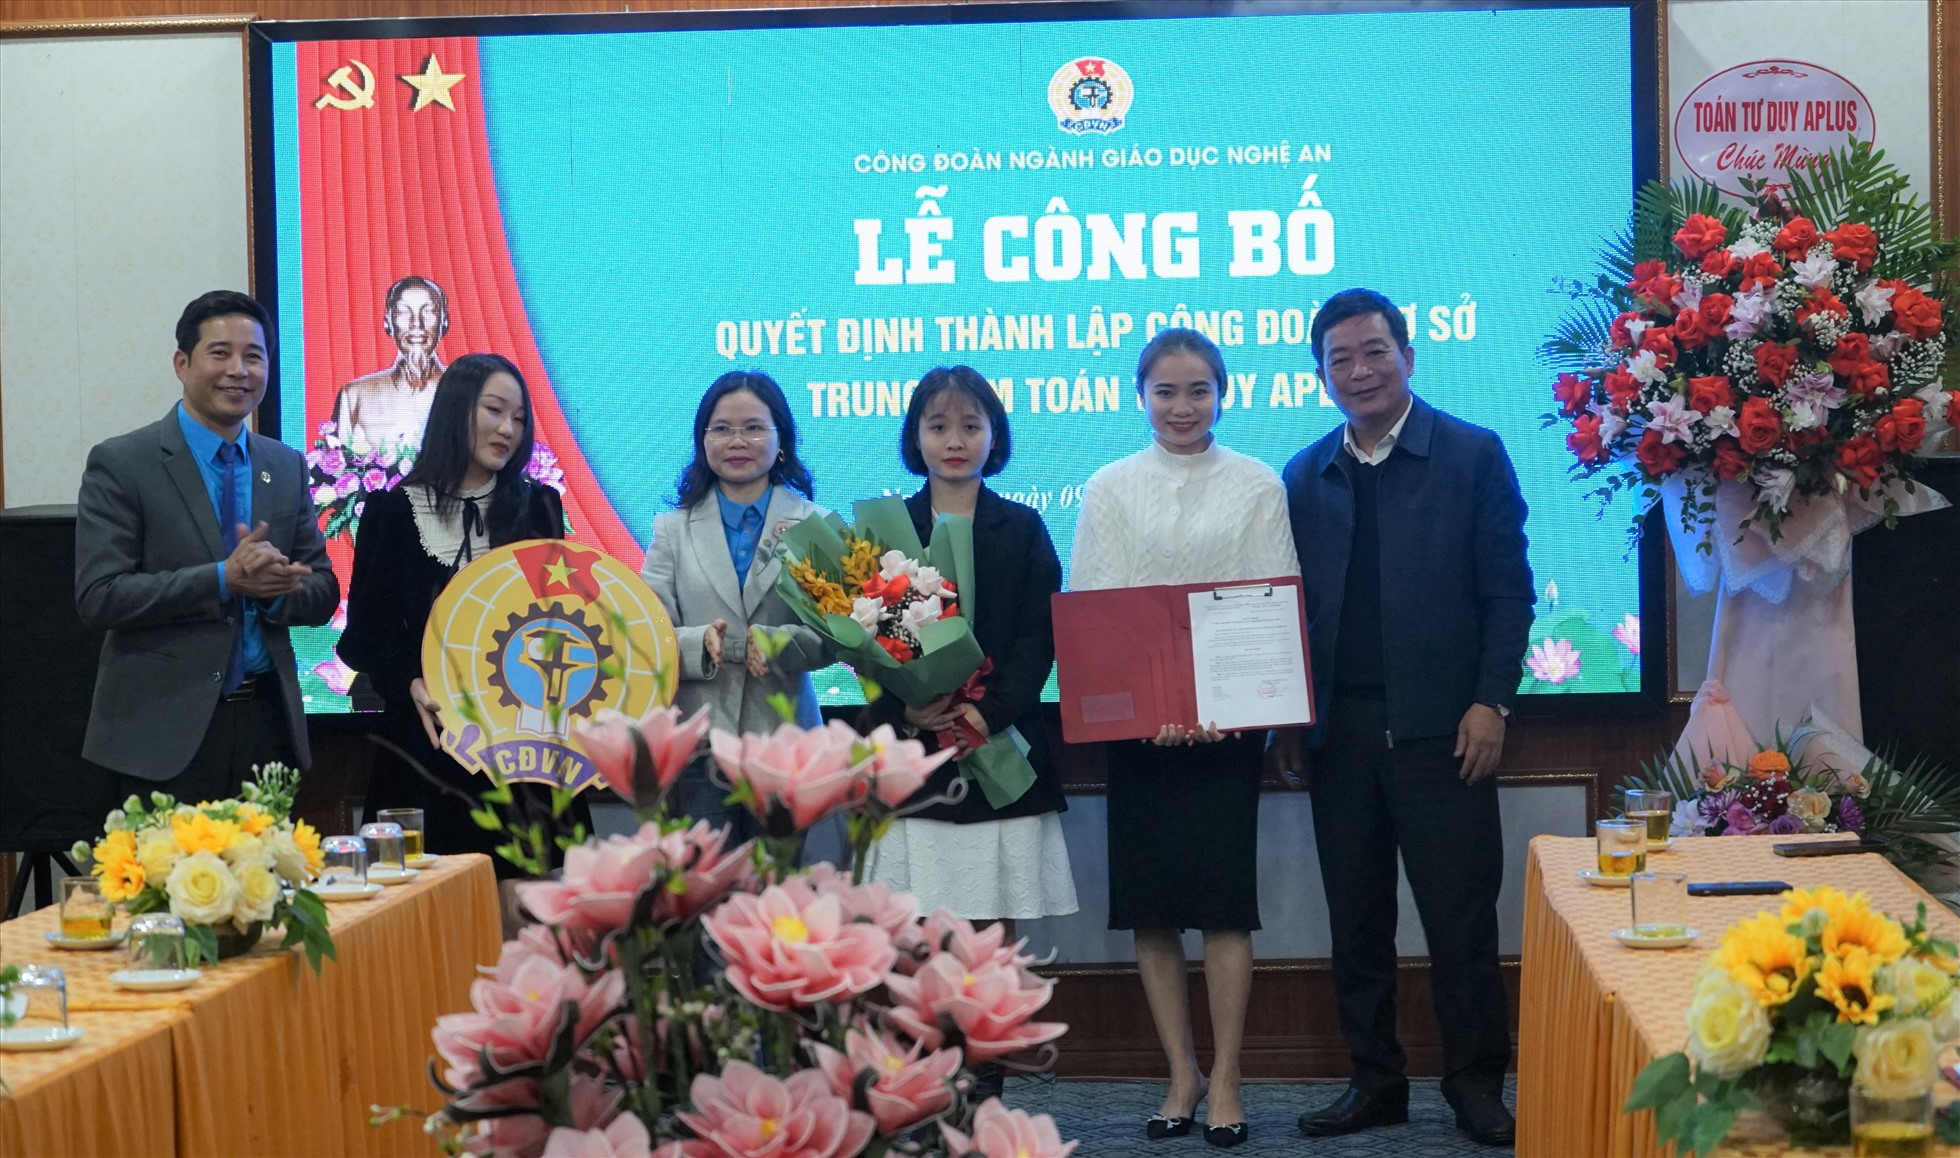 Đại diện Sở Giáo dục và Đào tạo và Liên đoàn Lao động tỉnh trao quyết định thành lập công đoàn cơ sở cho Trung tâm Toán tư duy Aplus. Ảnh: Quỳnh Trang